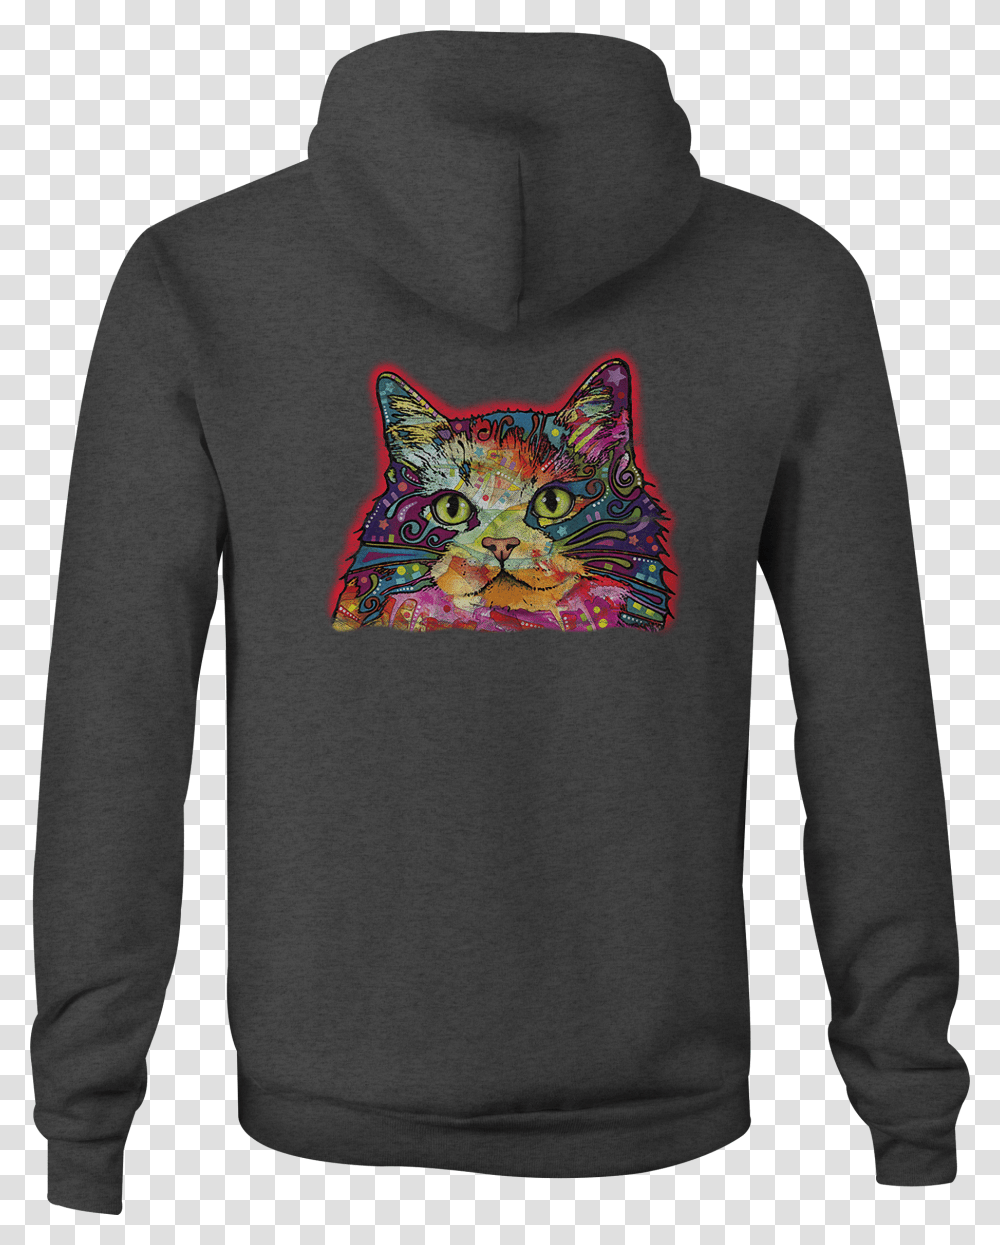 Zip Up Hoodie Neon Artistic Kitty Cat Hooded Sweatshirt Navy Seal Hoodie, Sleeve, Long Sleeve, Sweater Transparent Png